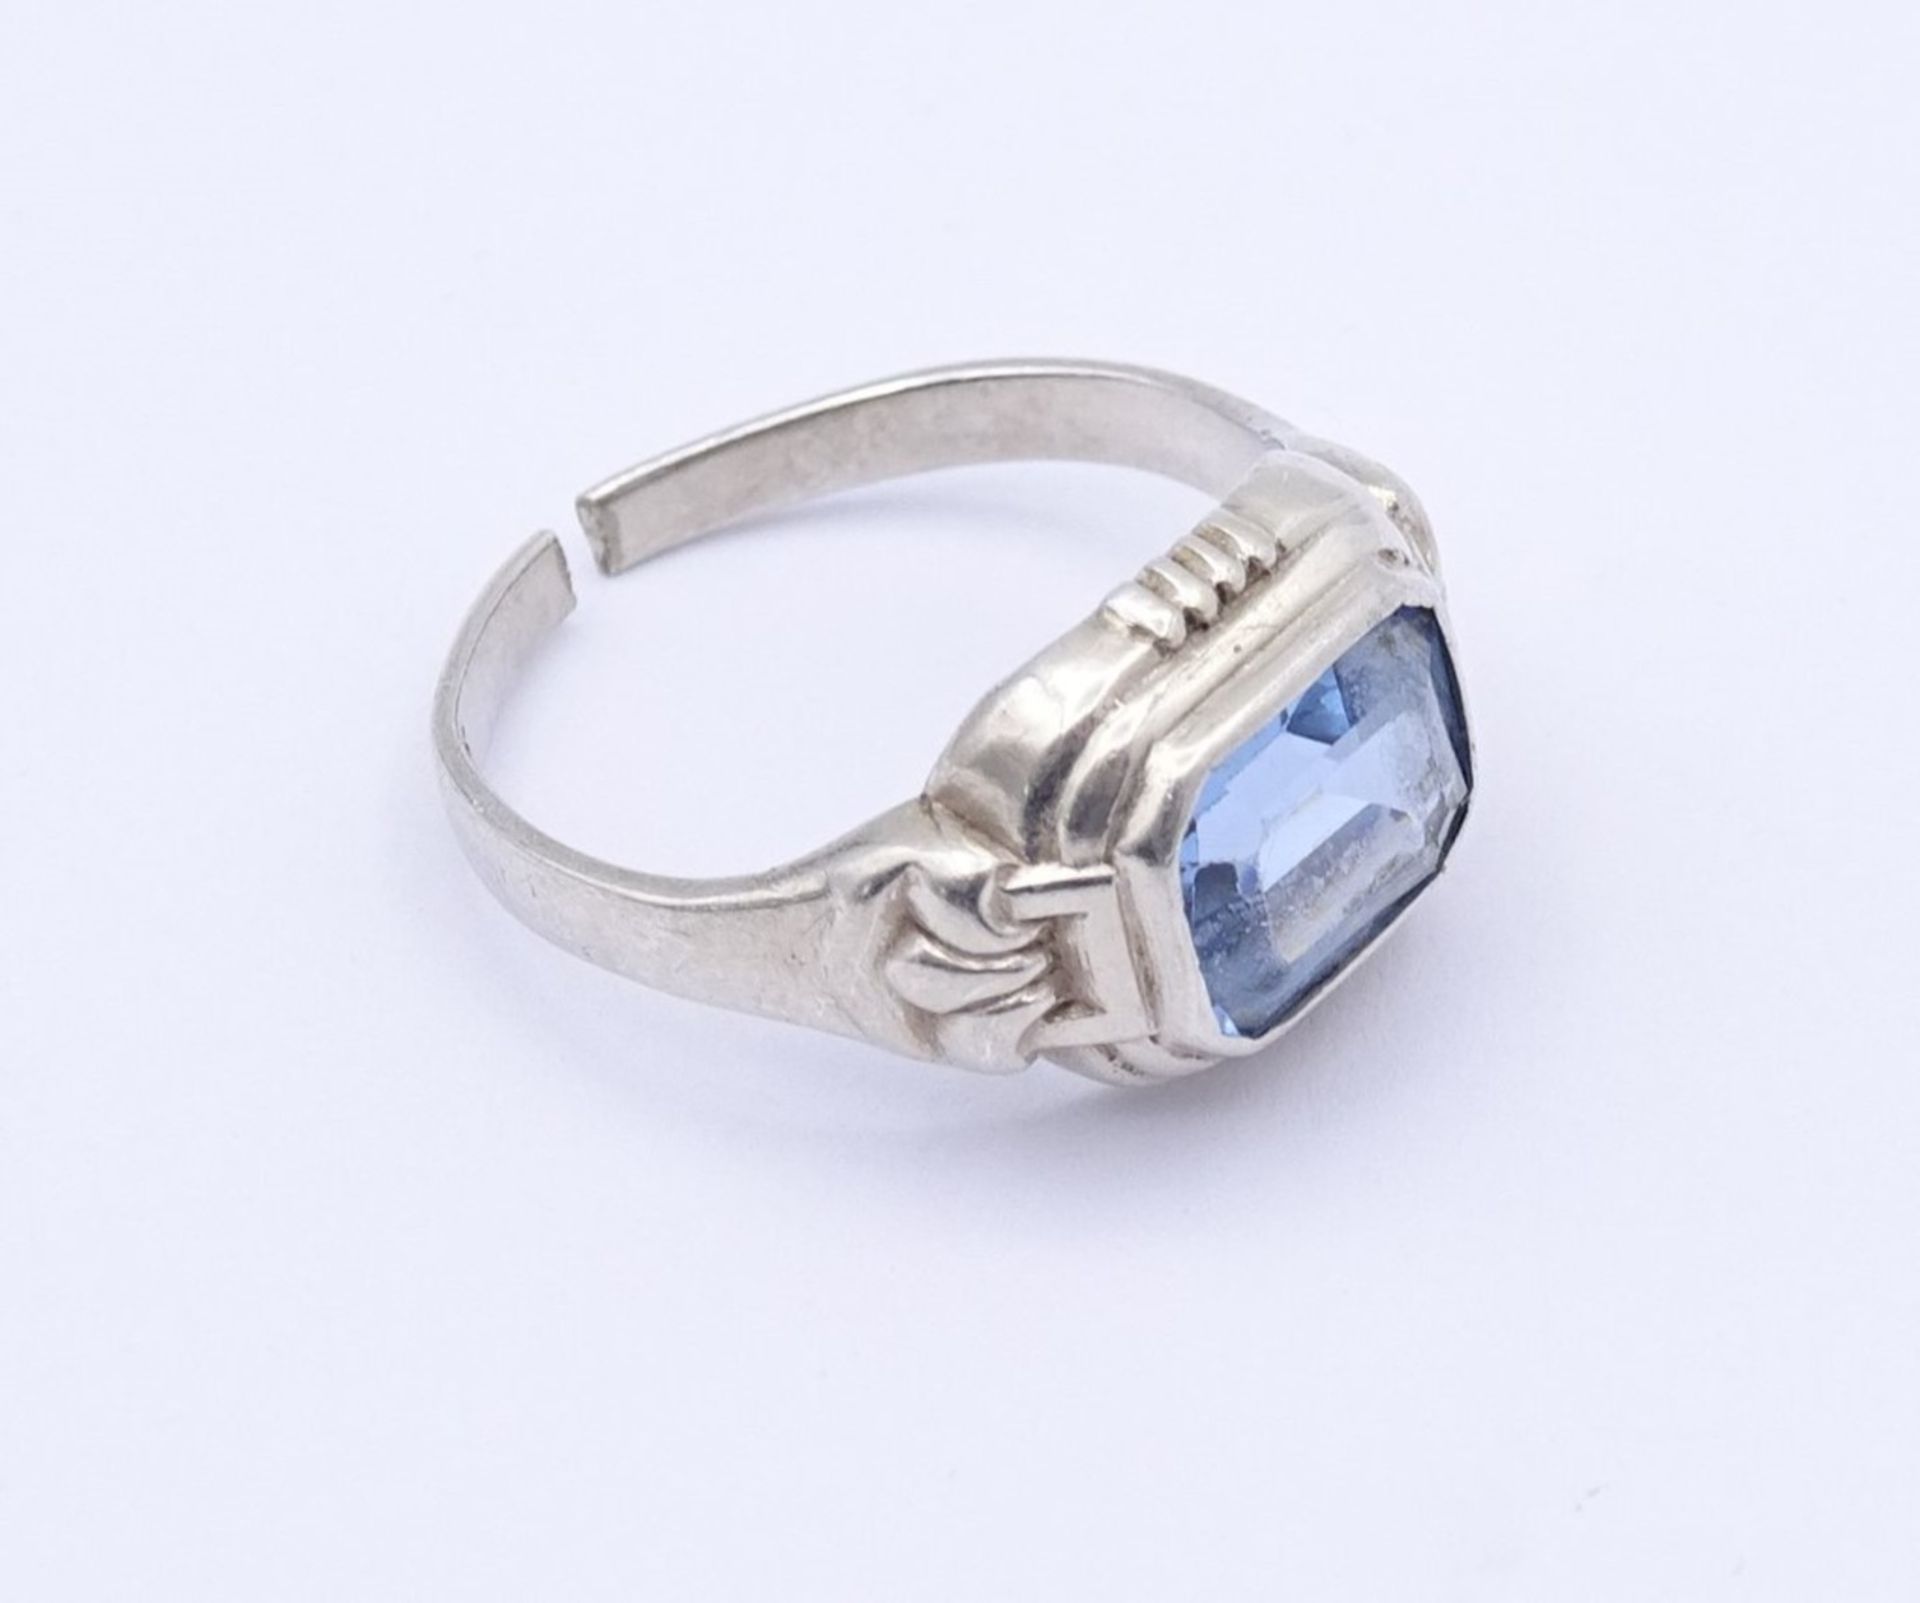 835er Silber Ring mit einen facc. hellblauen Stein,Schiene gebrochen, 3,4gr., RG 53/54 - Bild 5 aus 6